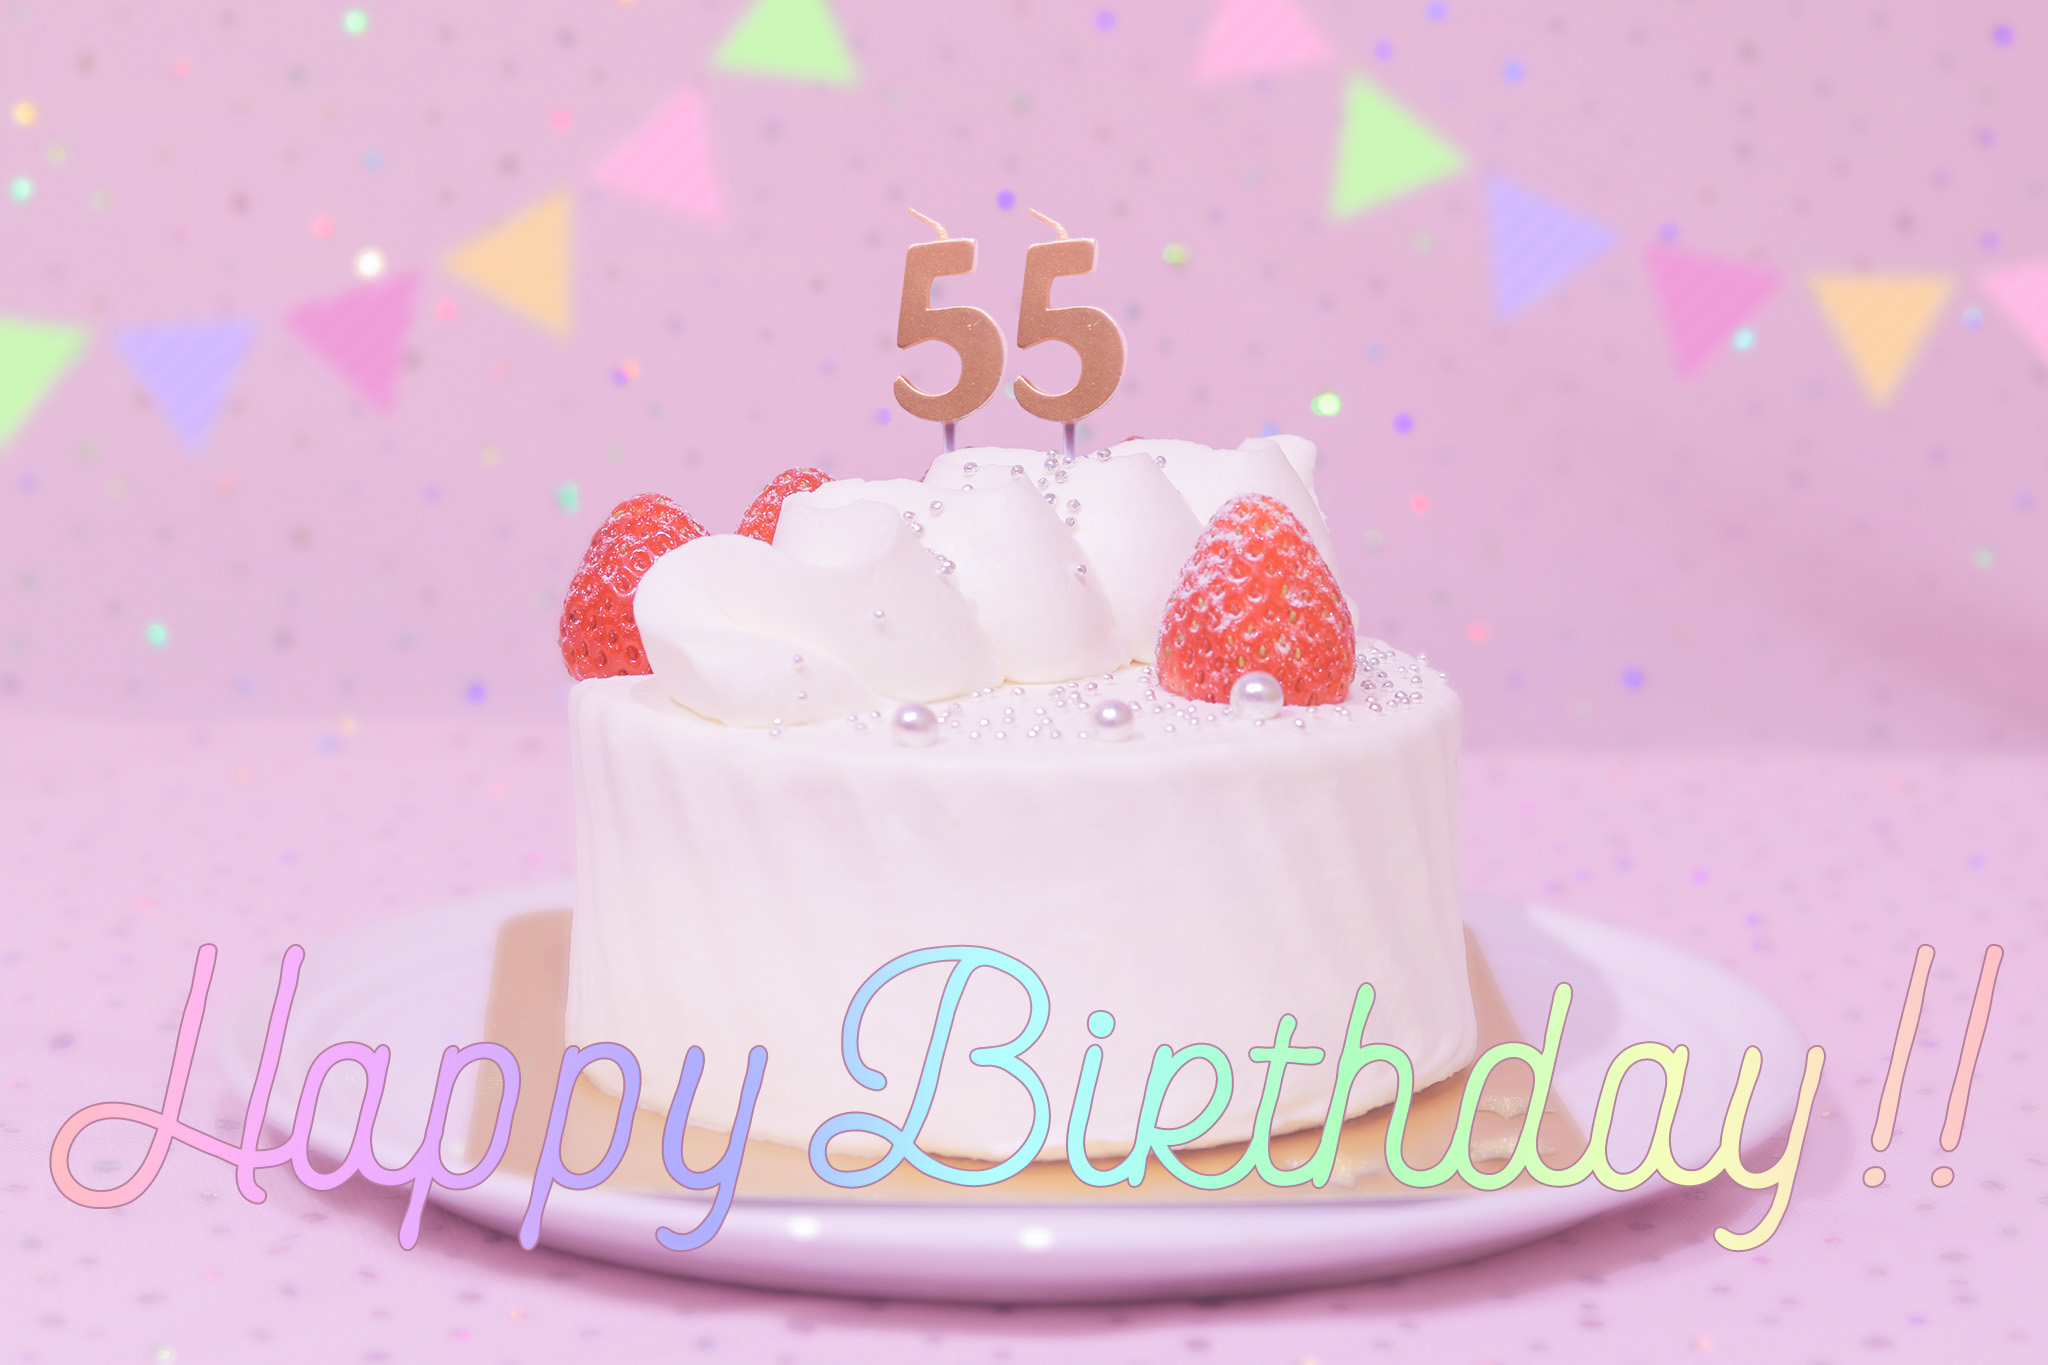 かわいい誕生日画像 ケーキとパステルカラーで可愛くお祝い 55歳編 のフリー画像 おしゃれなフリー写真素材 Girly Drop